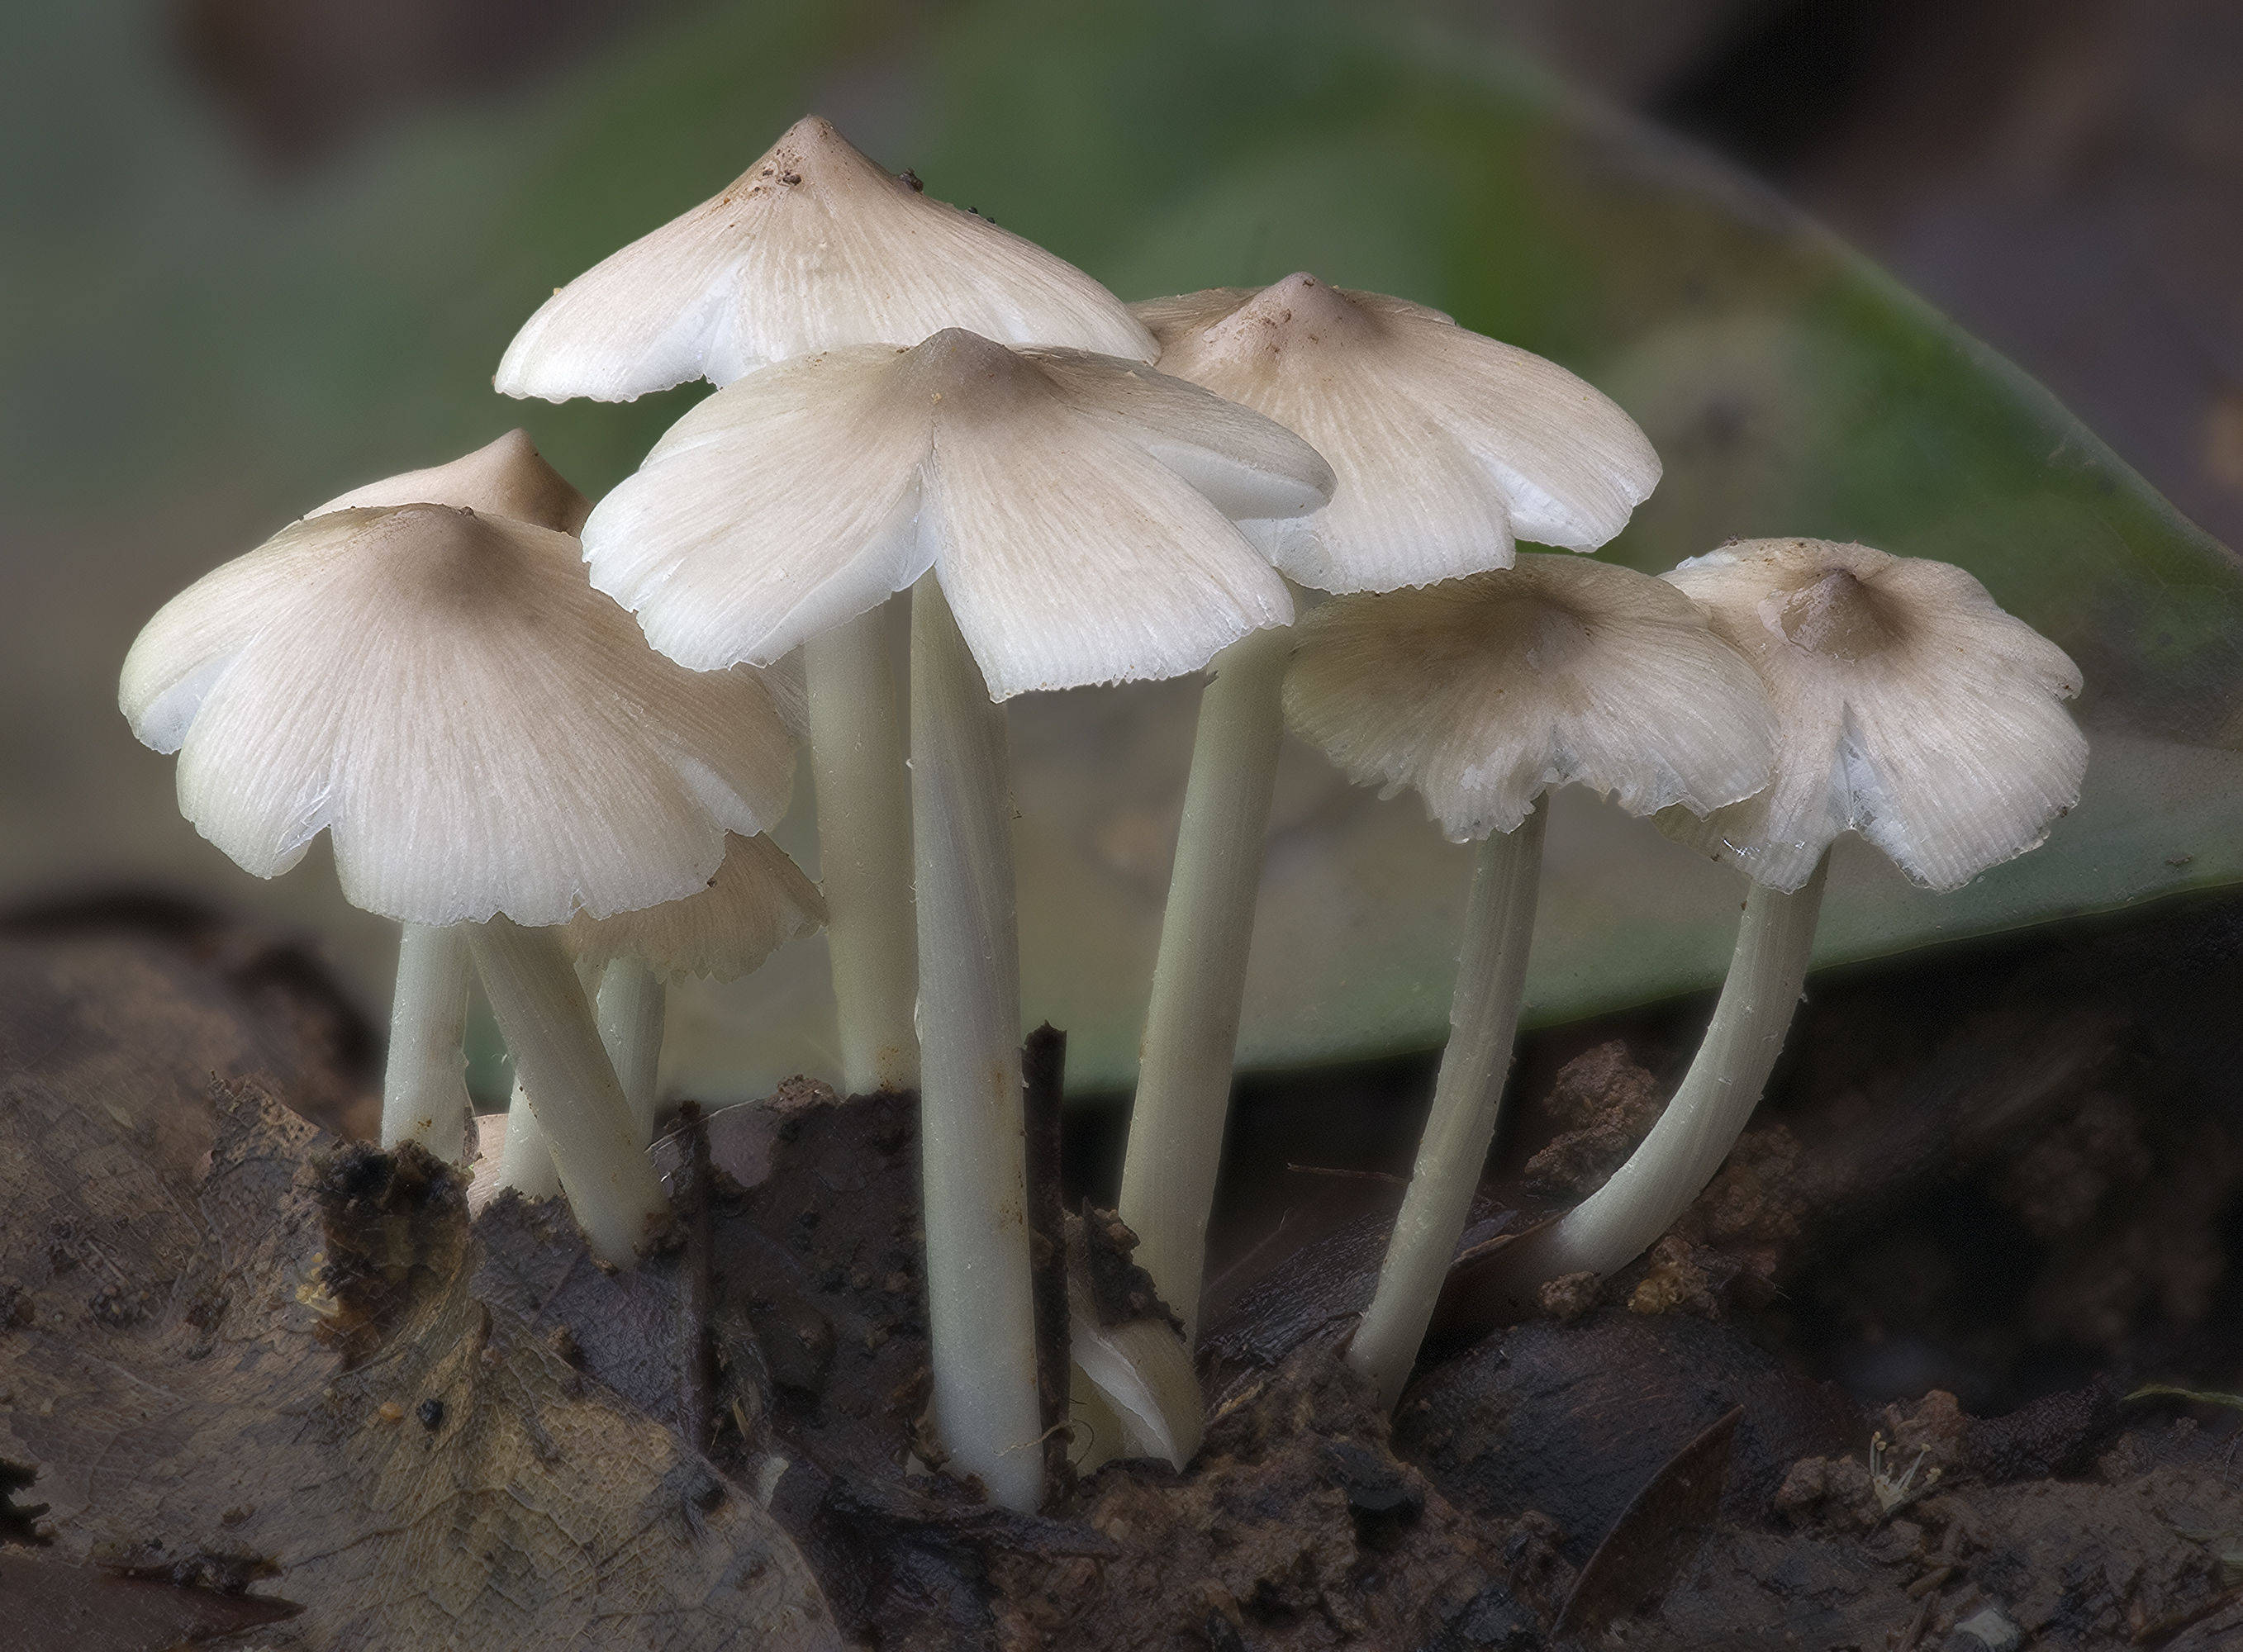 全球野生食用蘑菇科学清单发布,可食用蘑菇共2189种